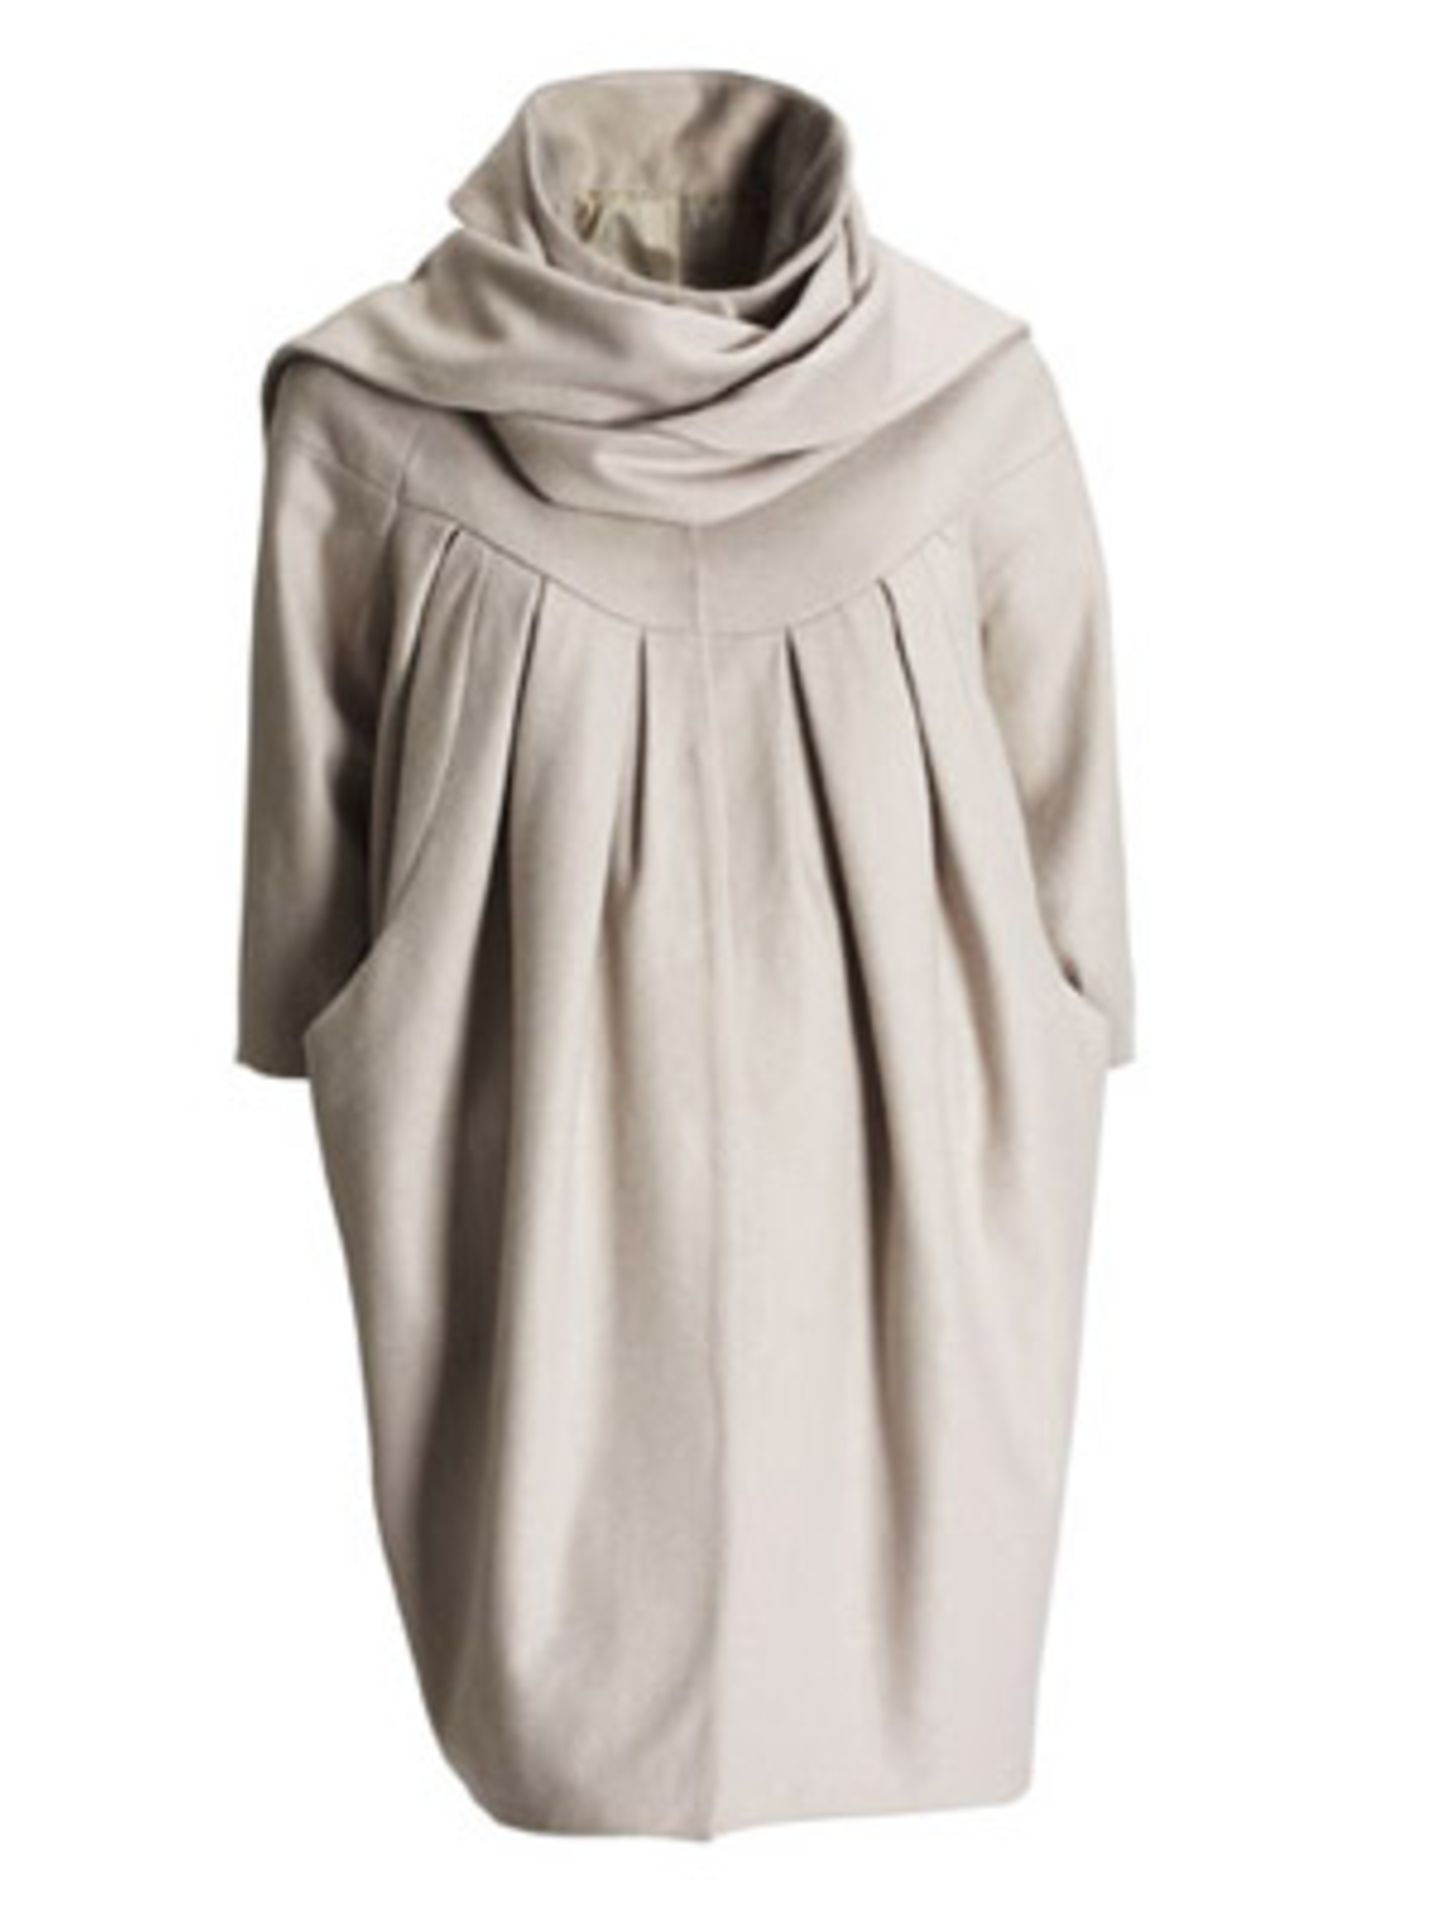 Oversize-Kleid mit halbem Arm von H&M, ca. 100 Euro.